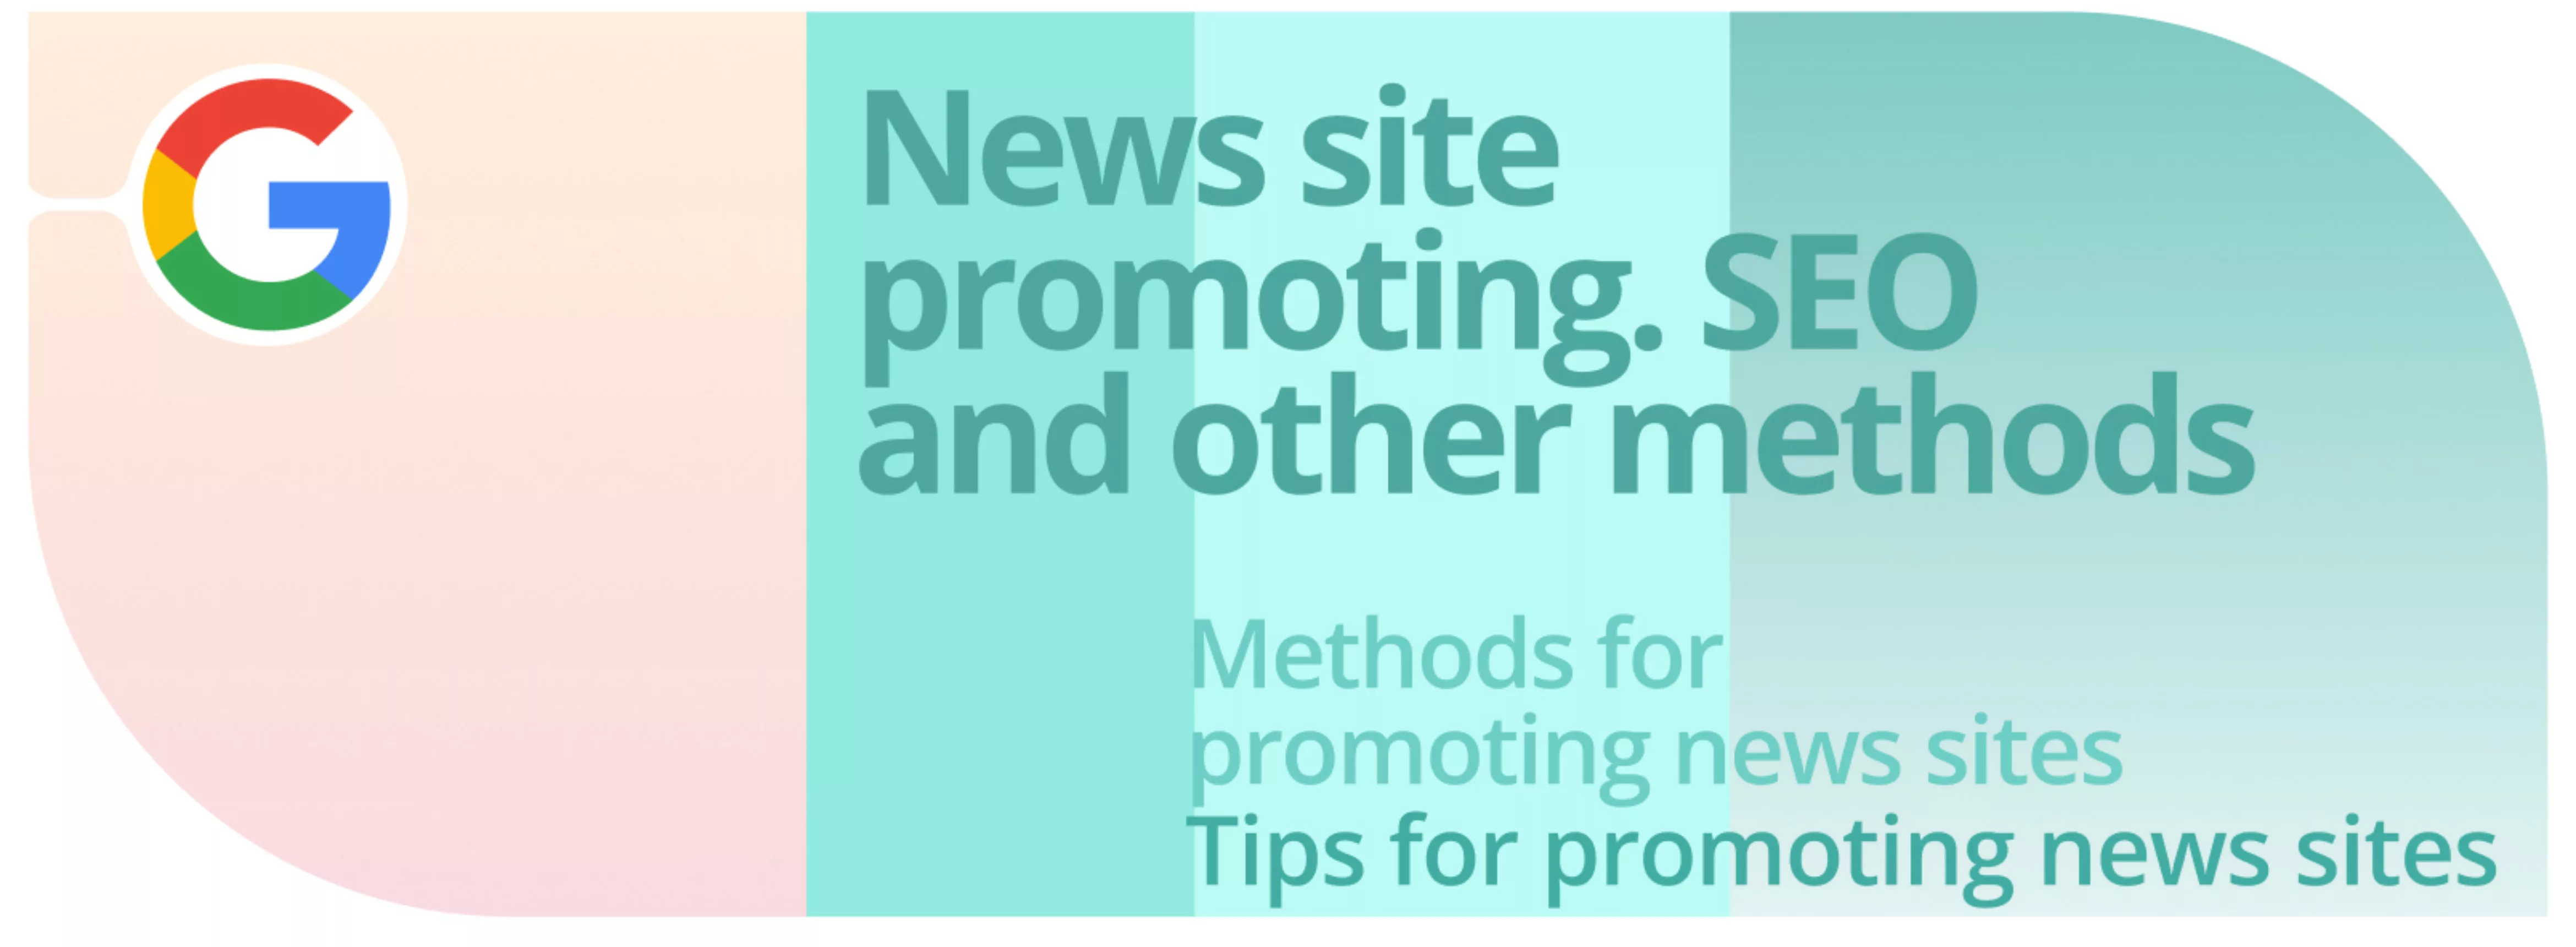 Promoción de sitios de noticias. SEO y otros métodos